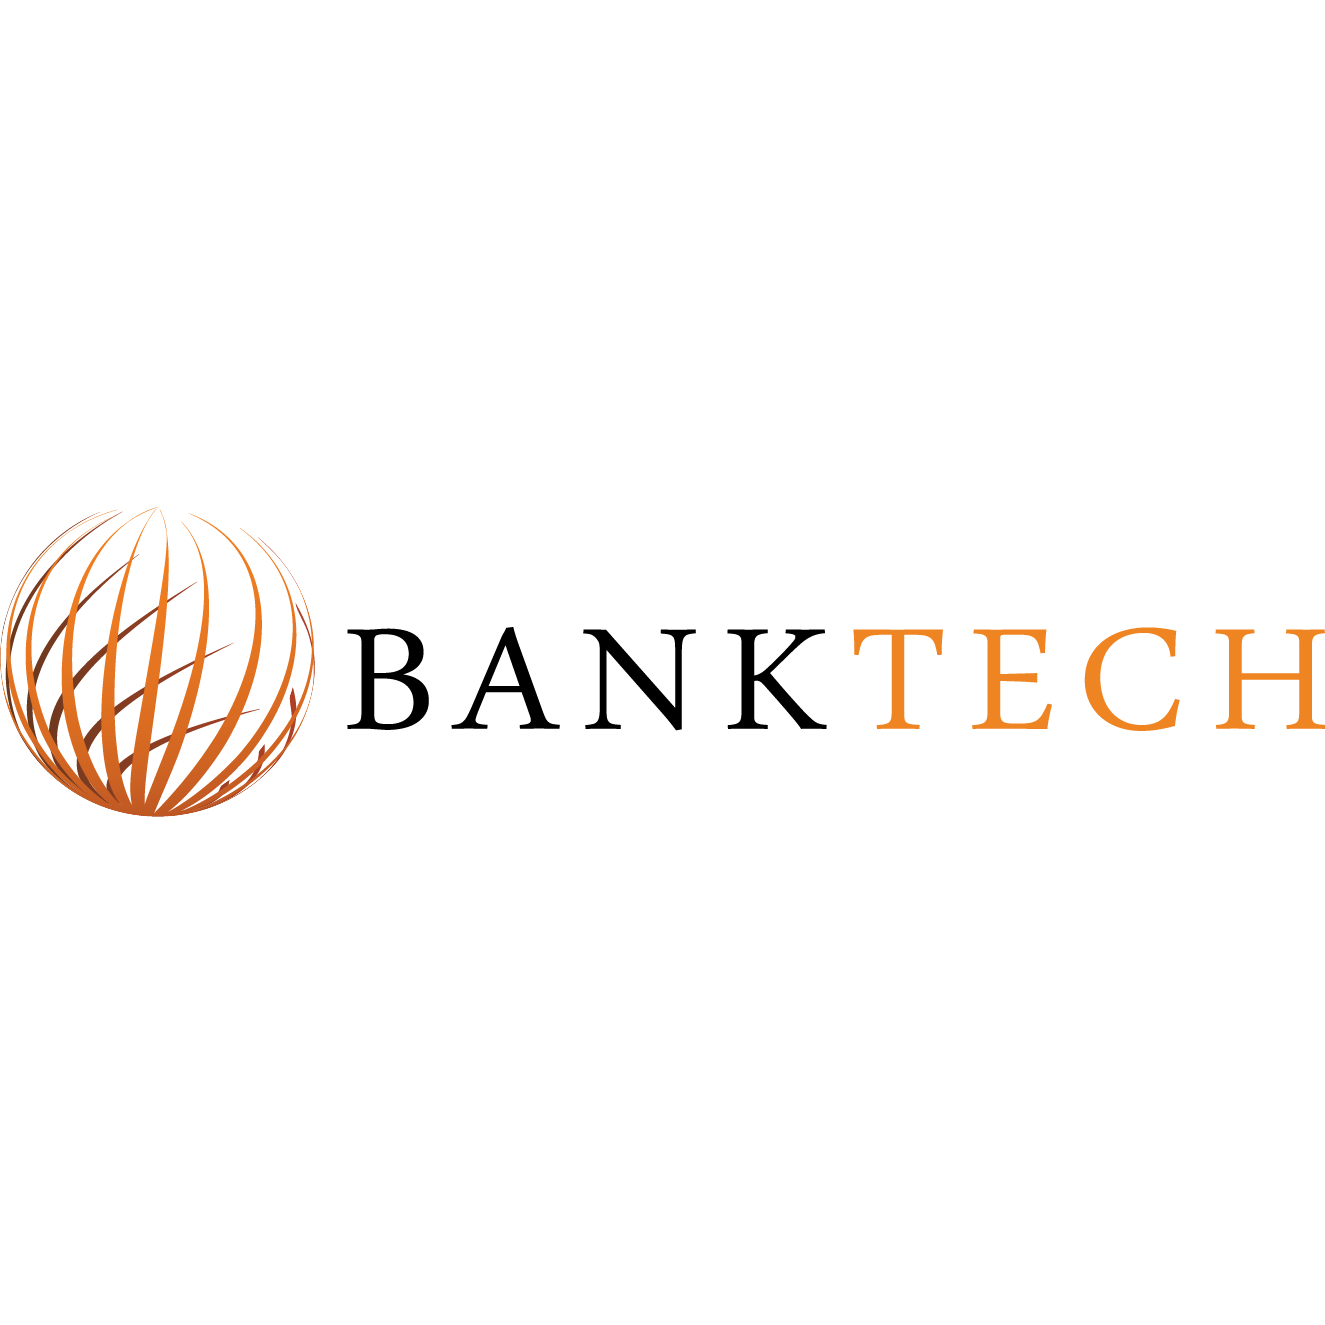 BANKTECH Logo